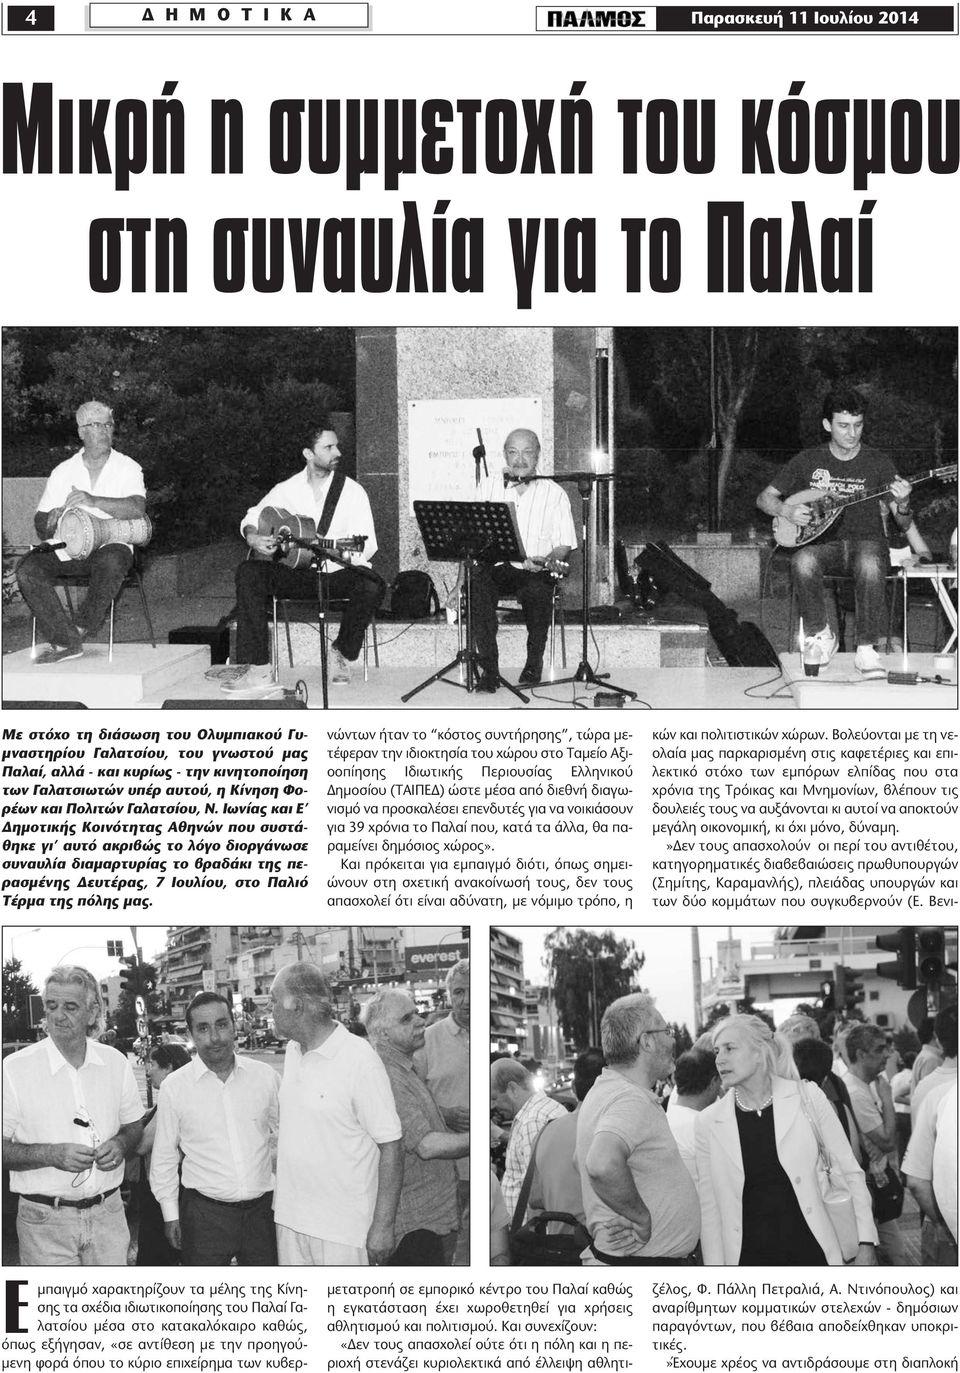 Ιωνίας και Ε ηµοτικής Κοινότητας Αθηνών που συστάθηκε γι αυτό ακριβώς το λόγο διοργάνωσε συναυλία διαµαρτυρίας το βραδάκι της περασµένης ευτέρας, 7 Ιουλίου, στο Παλιό Τέρµα της πόλης µας.